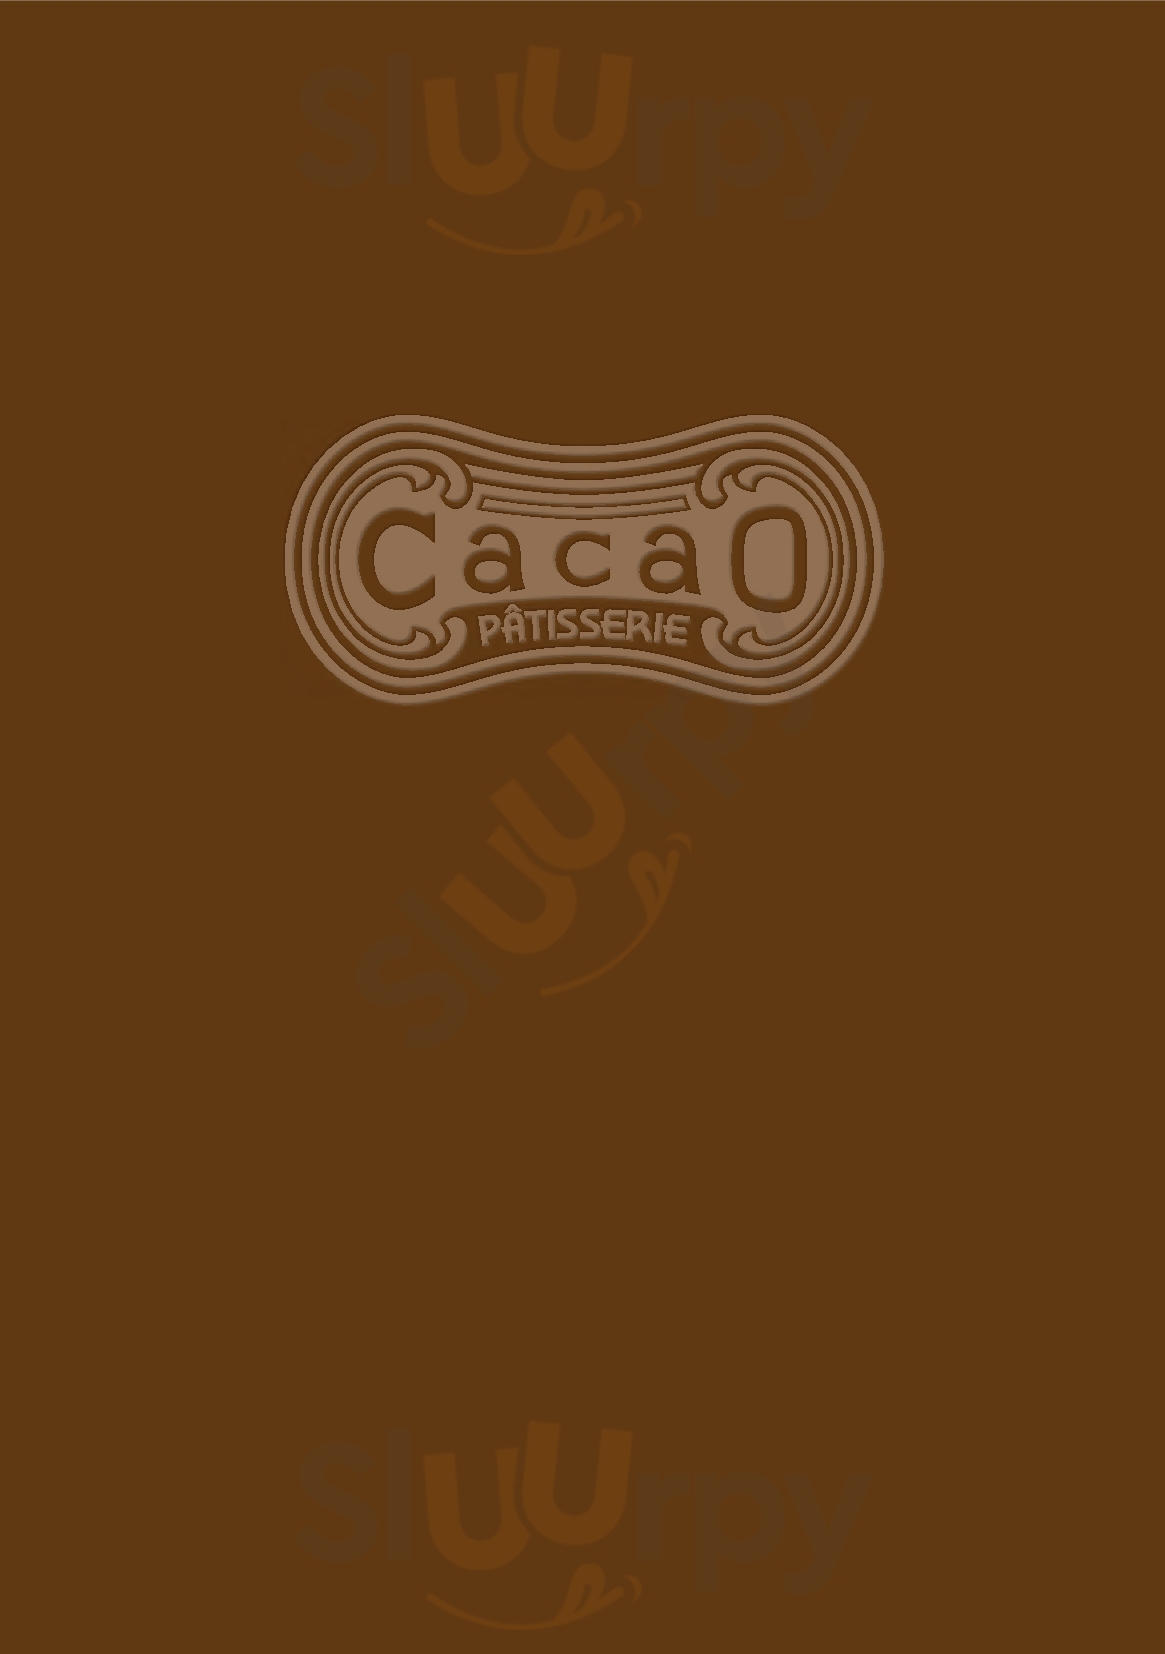 Cacao Sapa Menu - 1